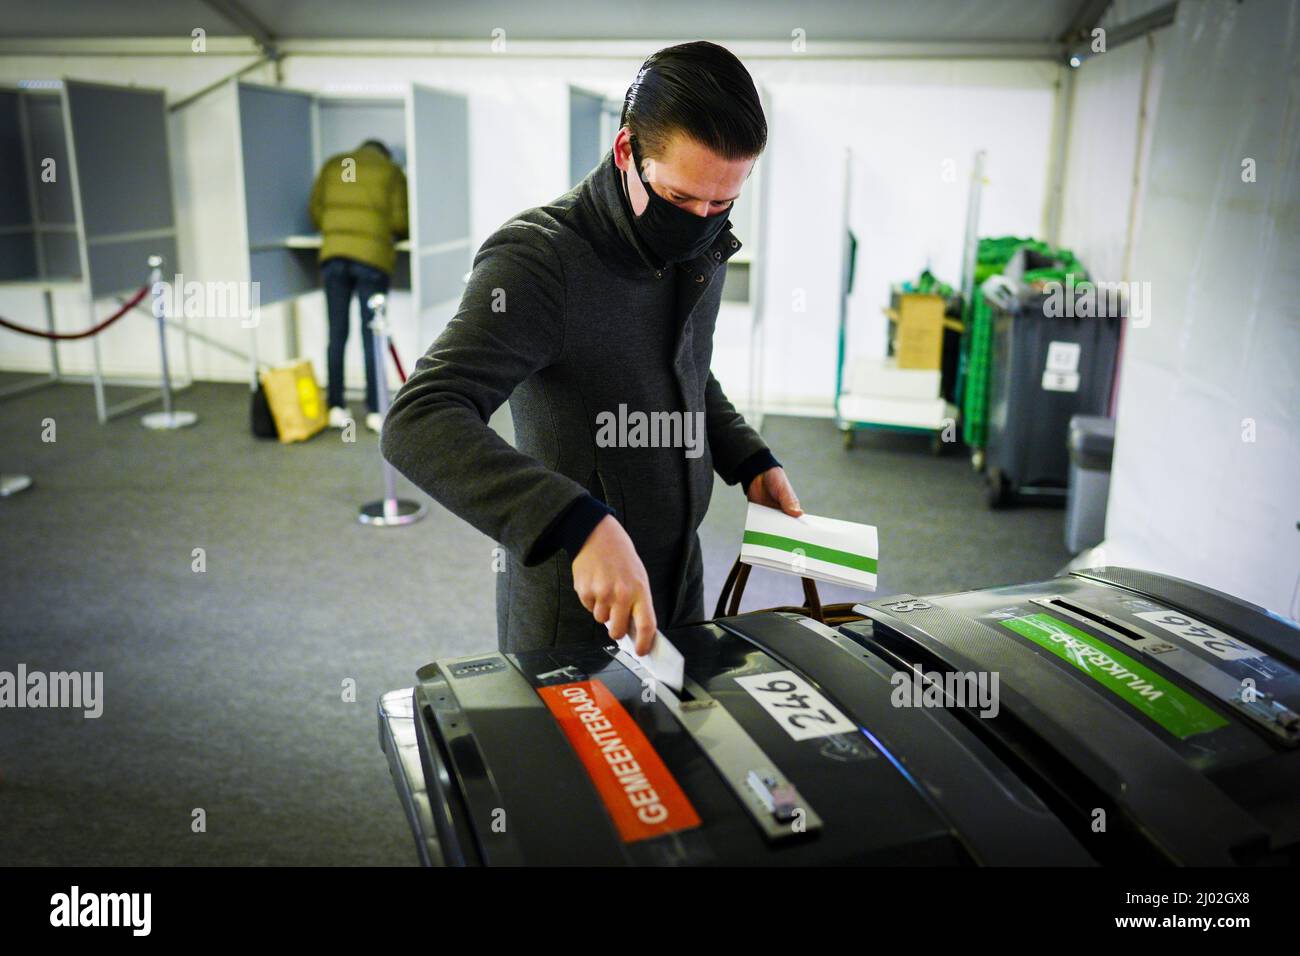 ROTTERDAM - Stemmen op station Rotterdam CS op de derde dag van de gemeenteraadsverkiezingen. Stemmen kan met een geldige stempas en een geldig identiteitsbewijs. ANP MARCO DE SWART Banque D'Images